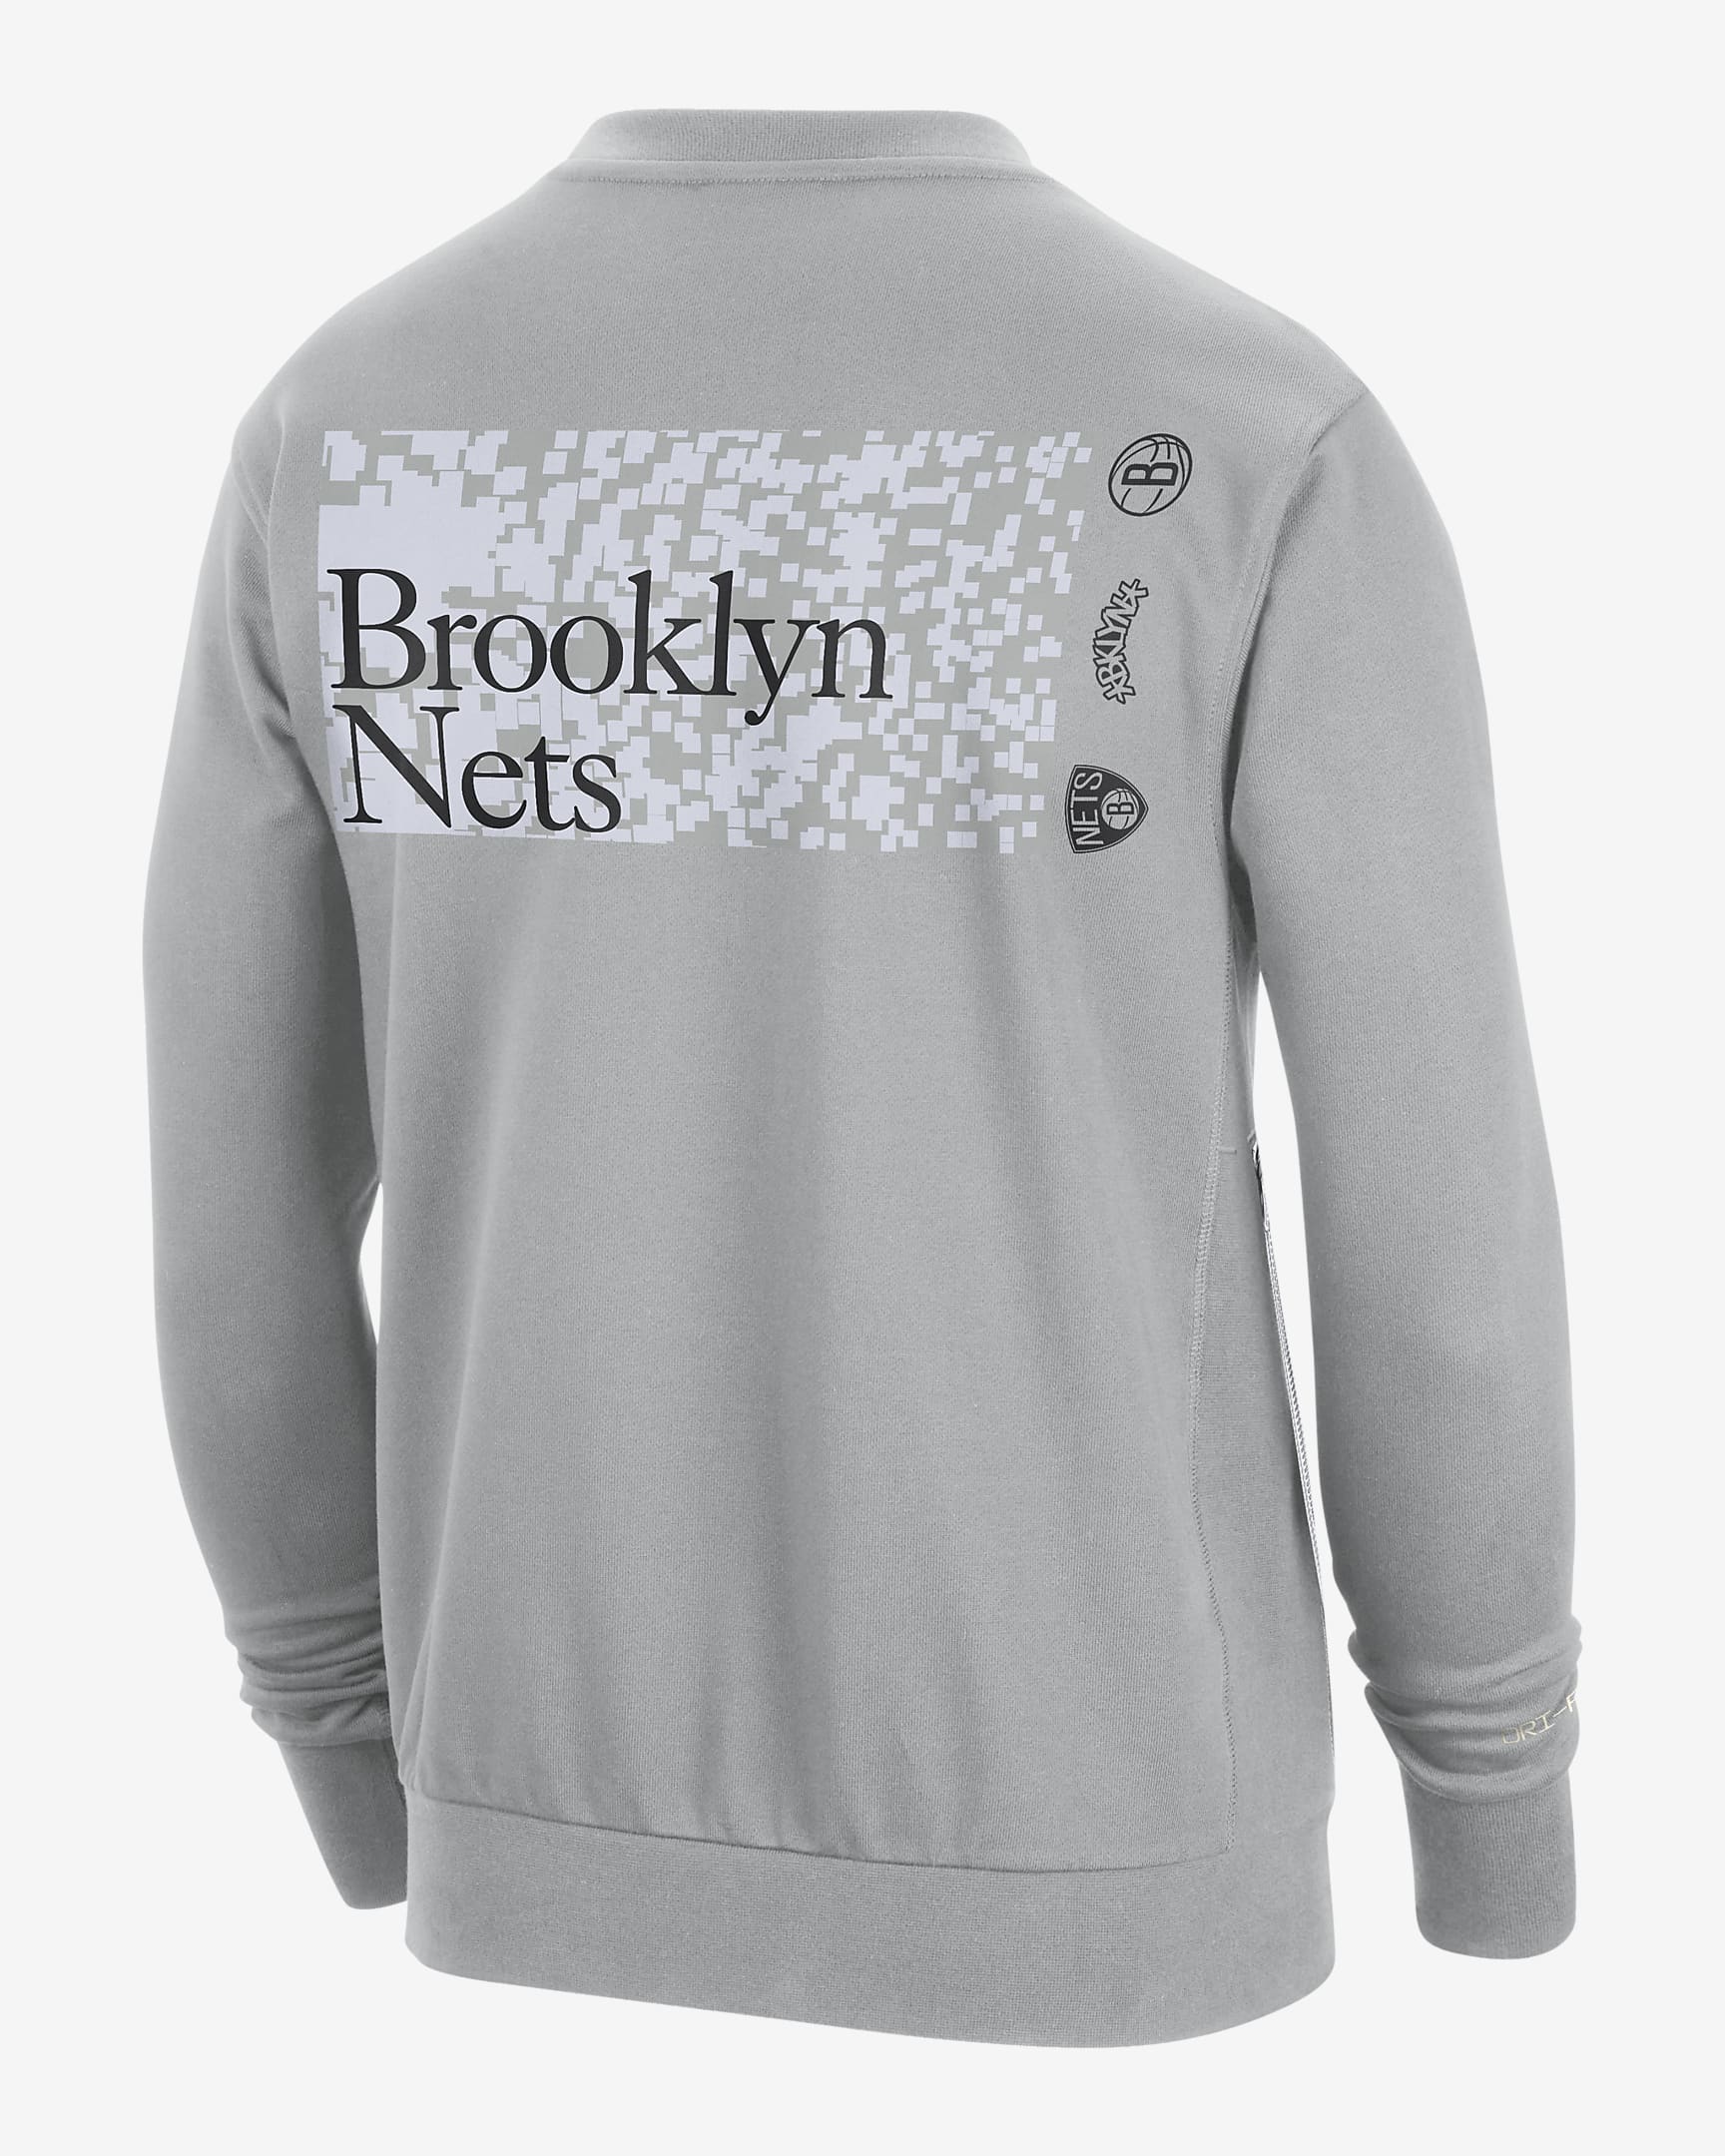 Brooklyn Nets Standard Issue Men's Nike Dri-FIT NBA Crew-Neck ...